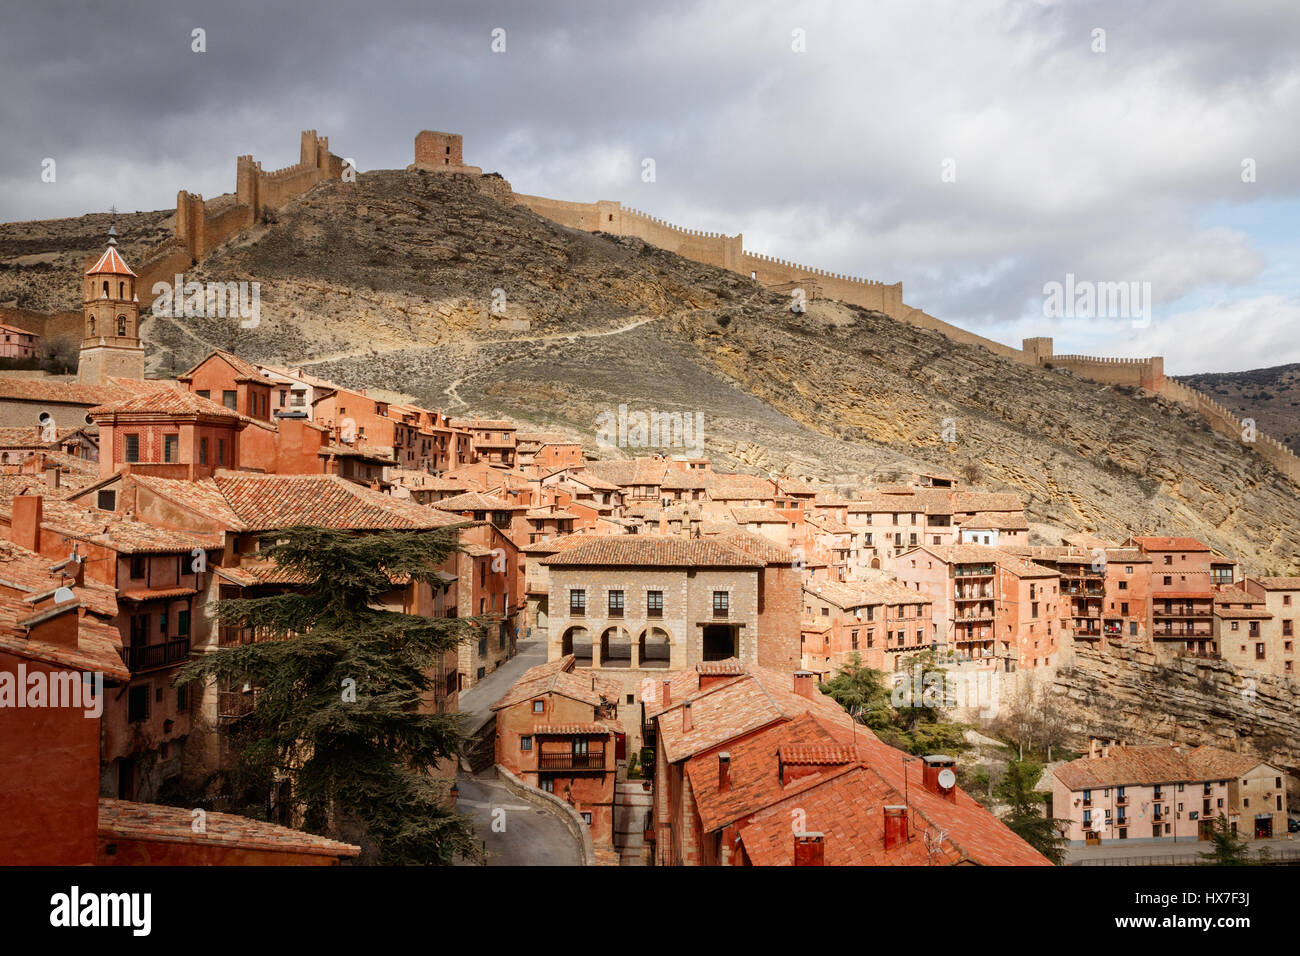 Bellissima vista della città medievale Albarracin nella luce del sole con le colline e le mura della città sullo sfondo sotto un cielo nuvoloso. Teruel, Spagna. Foto Stock